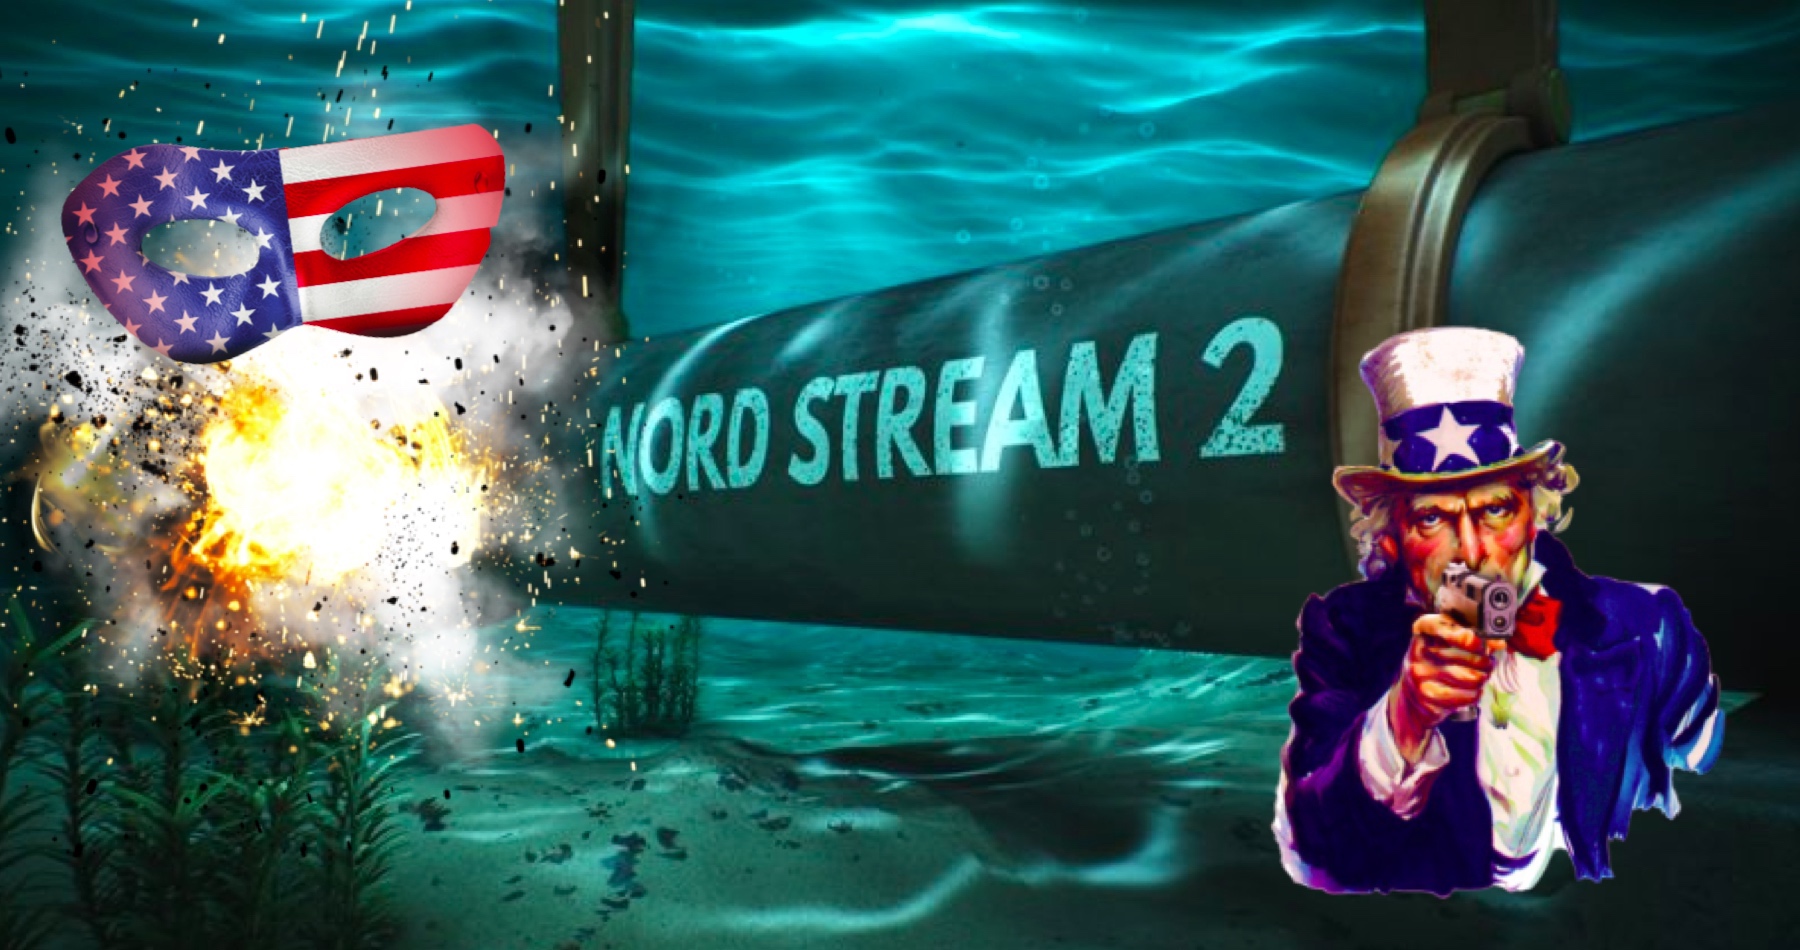 Sabotáž podmořského plynovodu Nord Stream by mohla vést ke kolapsu NATO